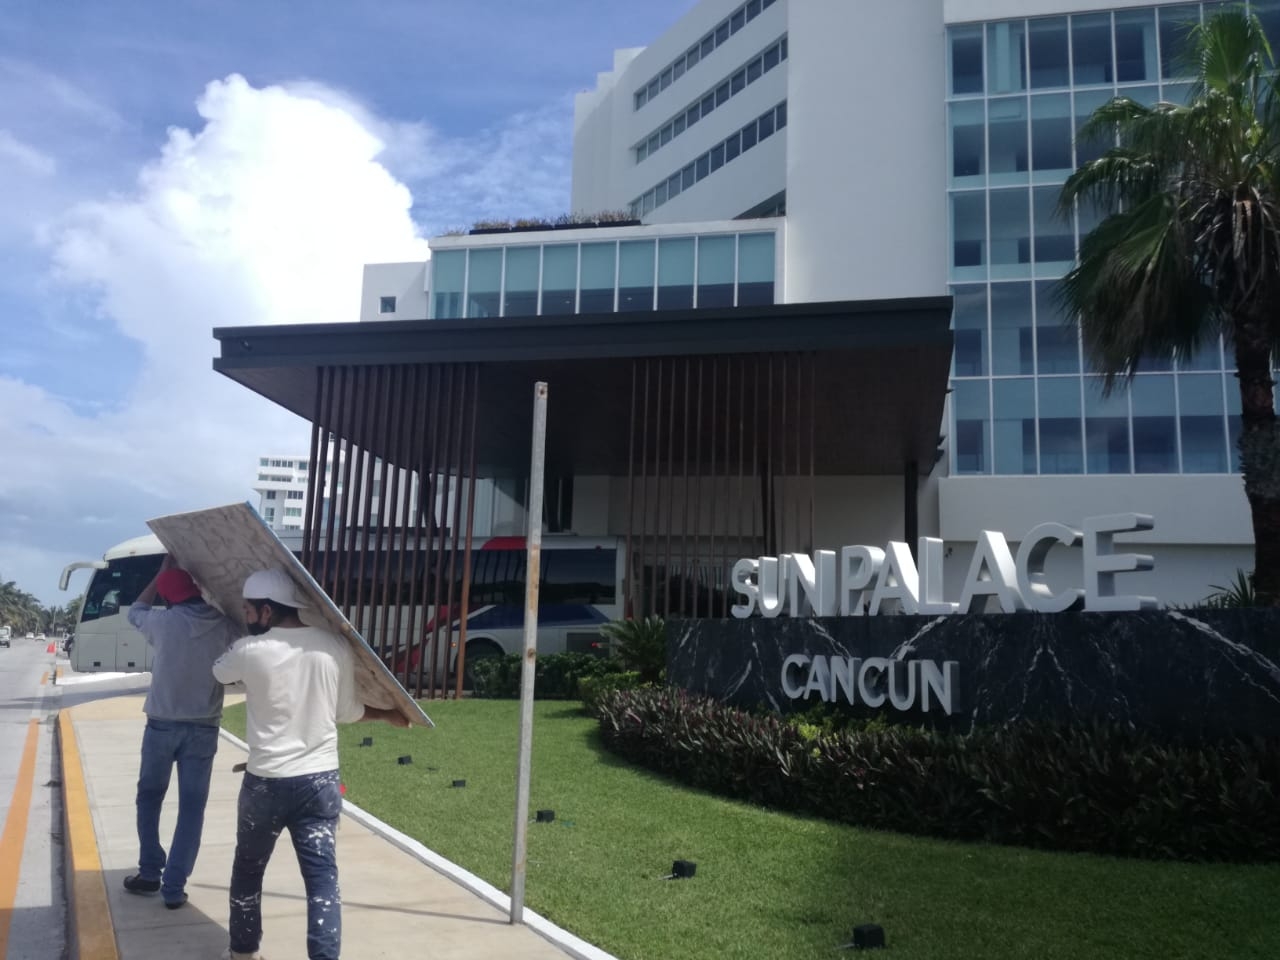 Hoteles de Cancún trasladan a inquilinos por Huracán Delta